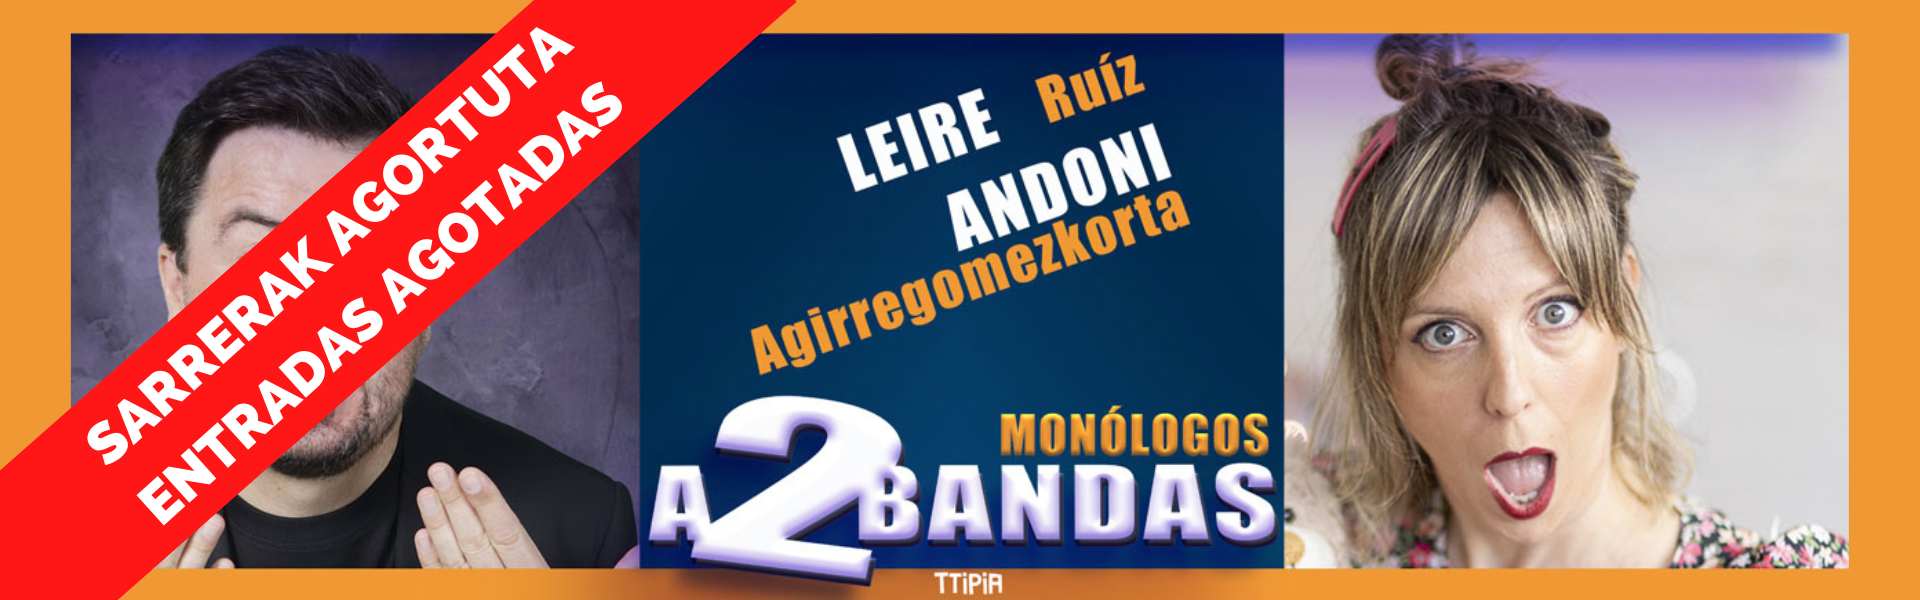 Monólogos a 2 bandas. Leire Ruiz y Andoni Agirregomezkorta